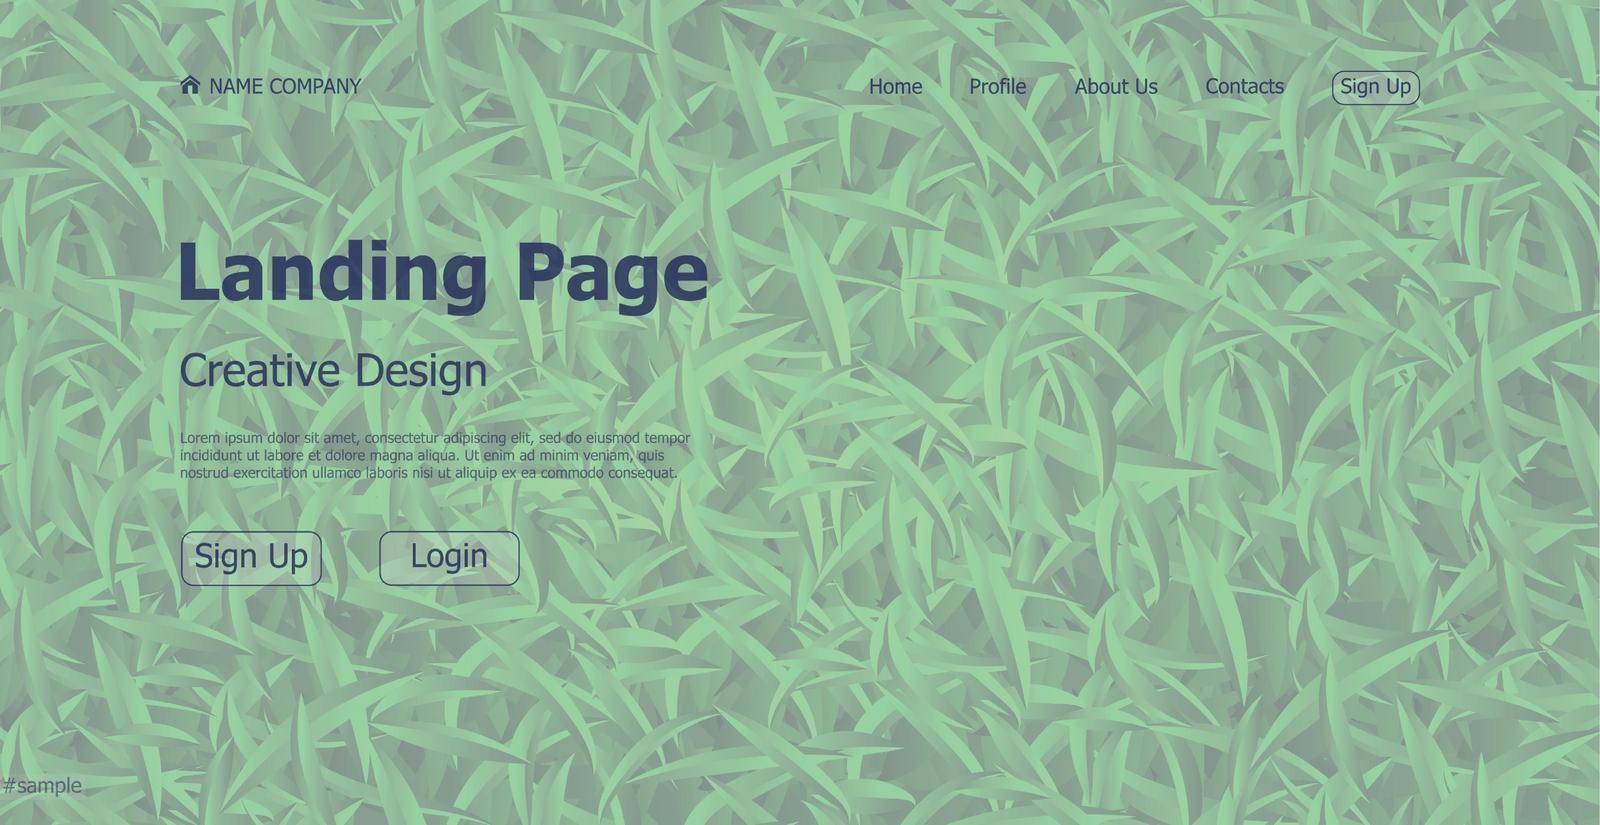 Eco problem landing page design concept website - Vector illustration